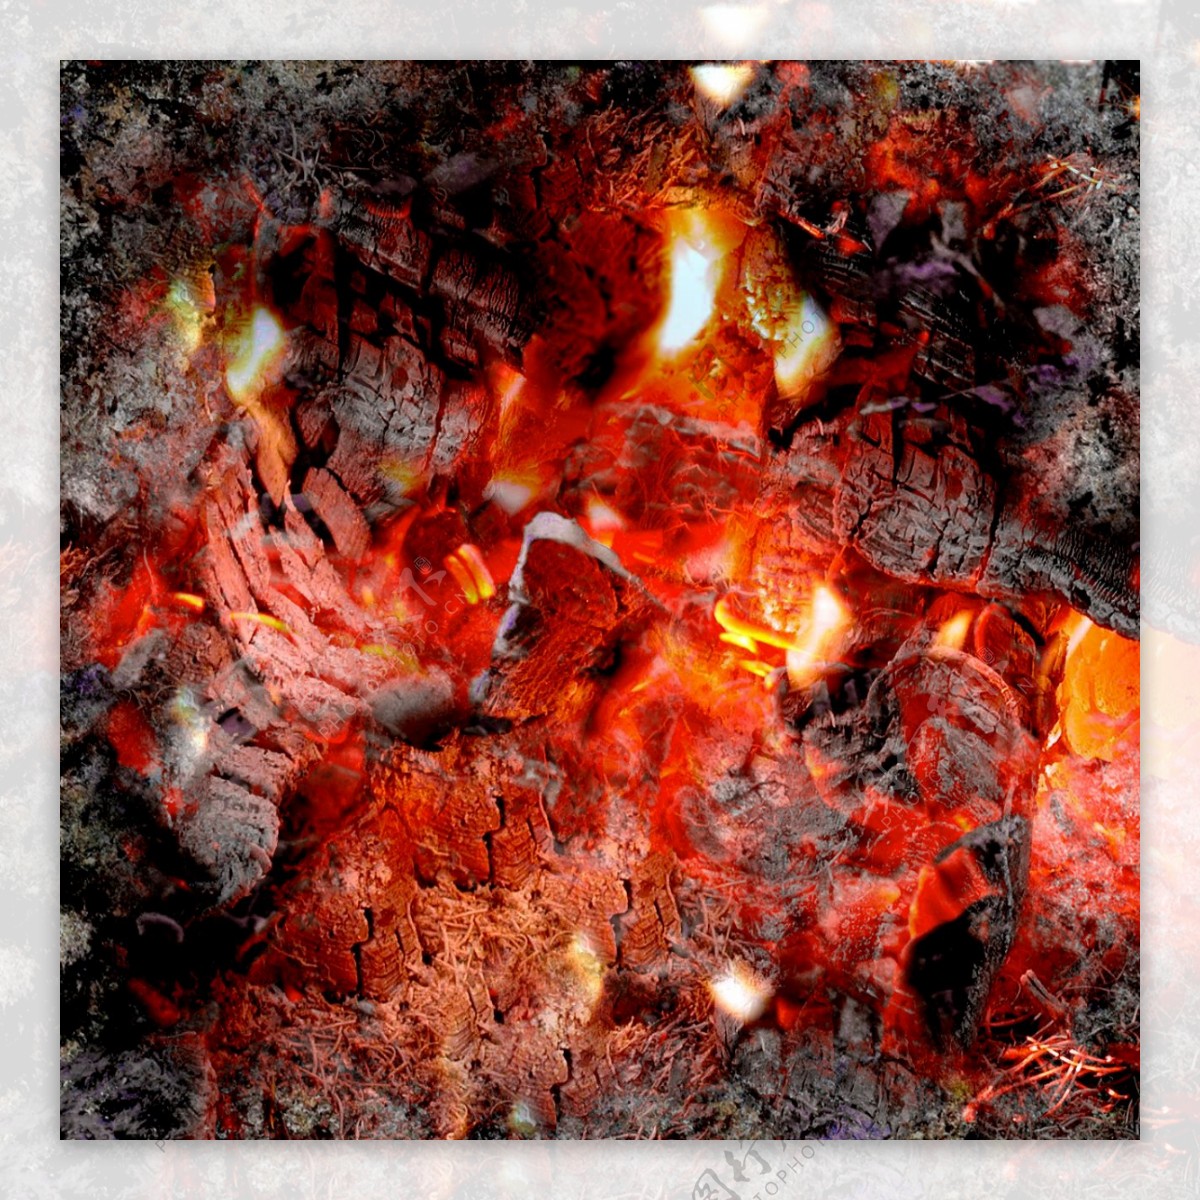 fireplace壁炉烧木材的壁炉024